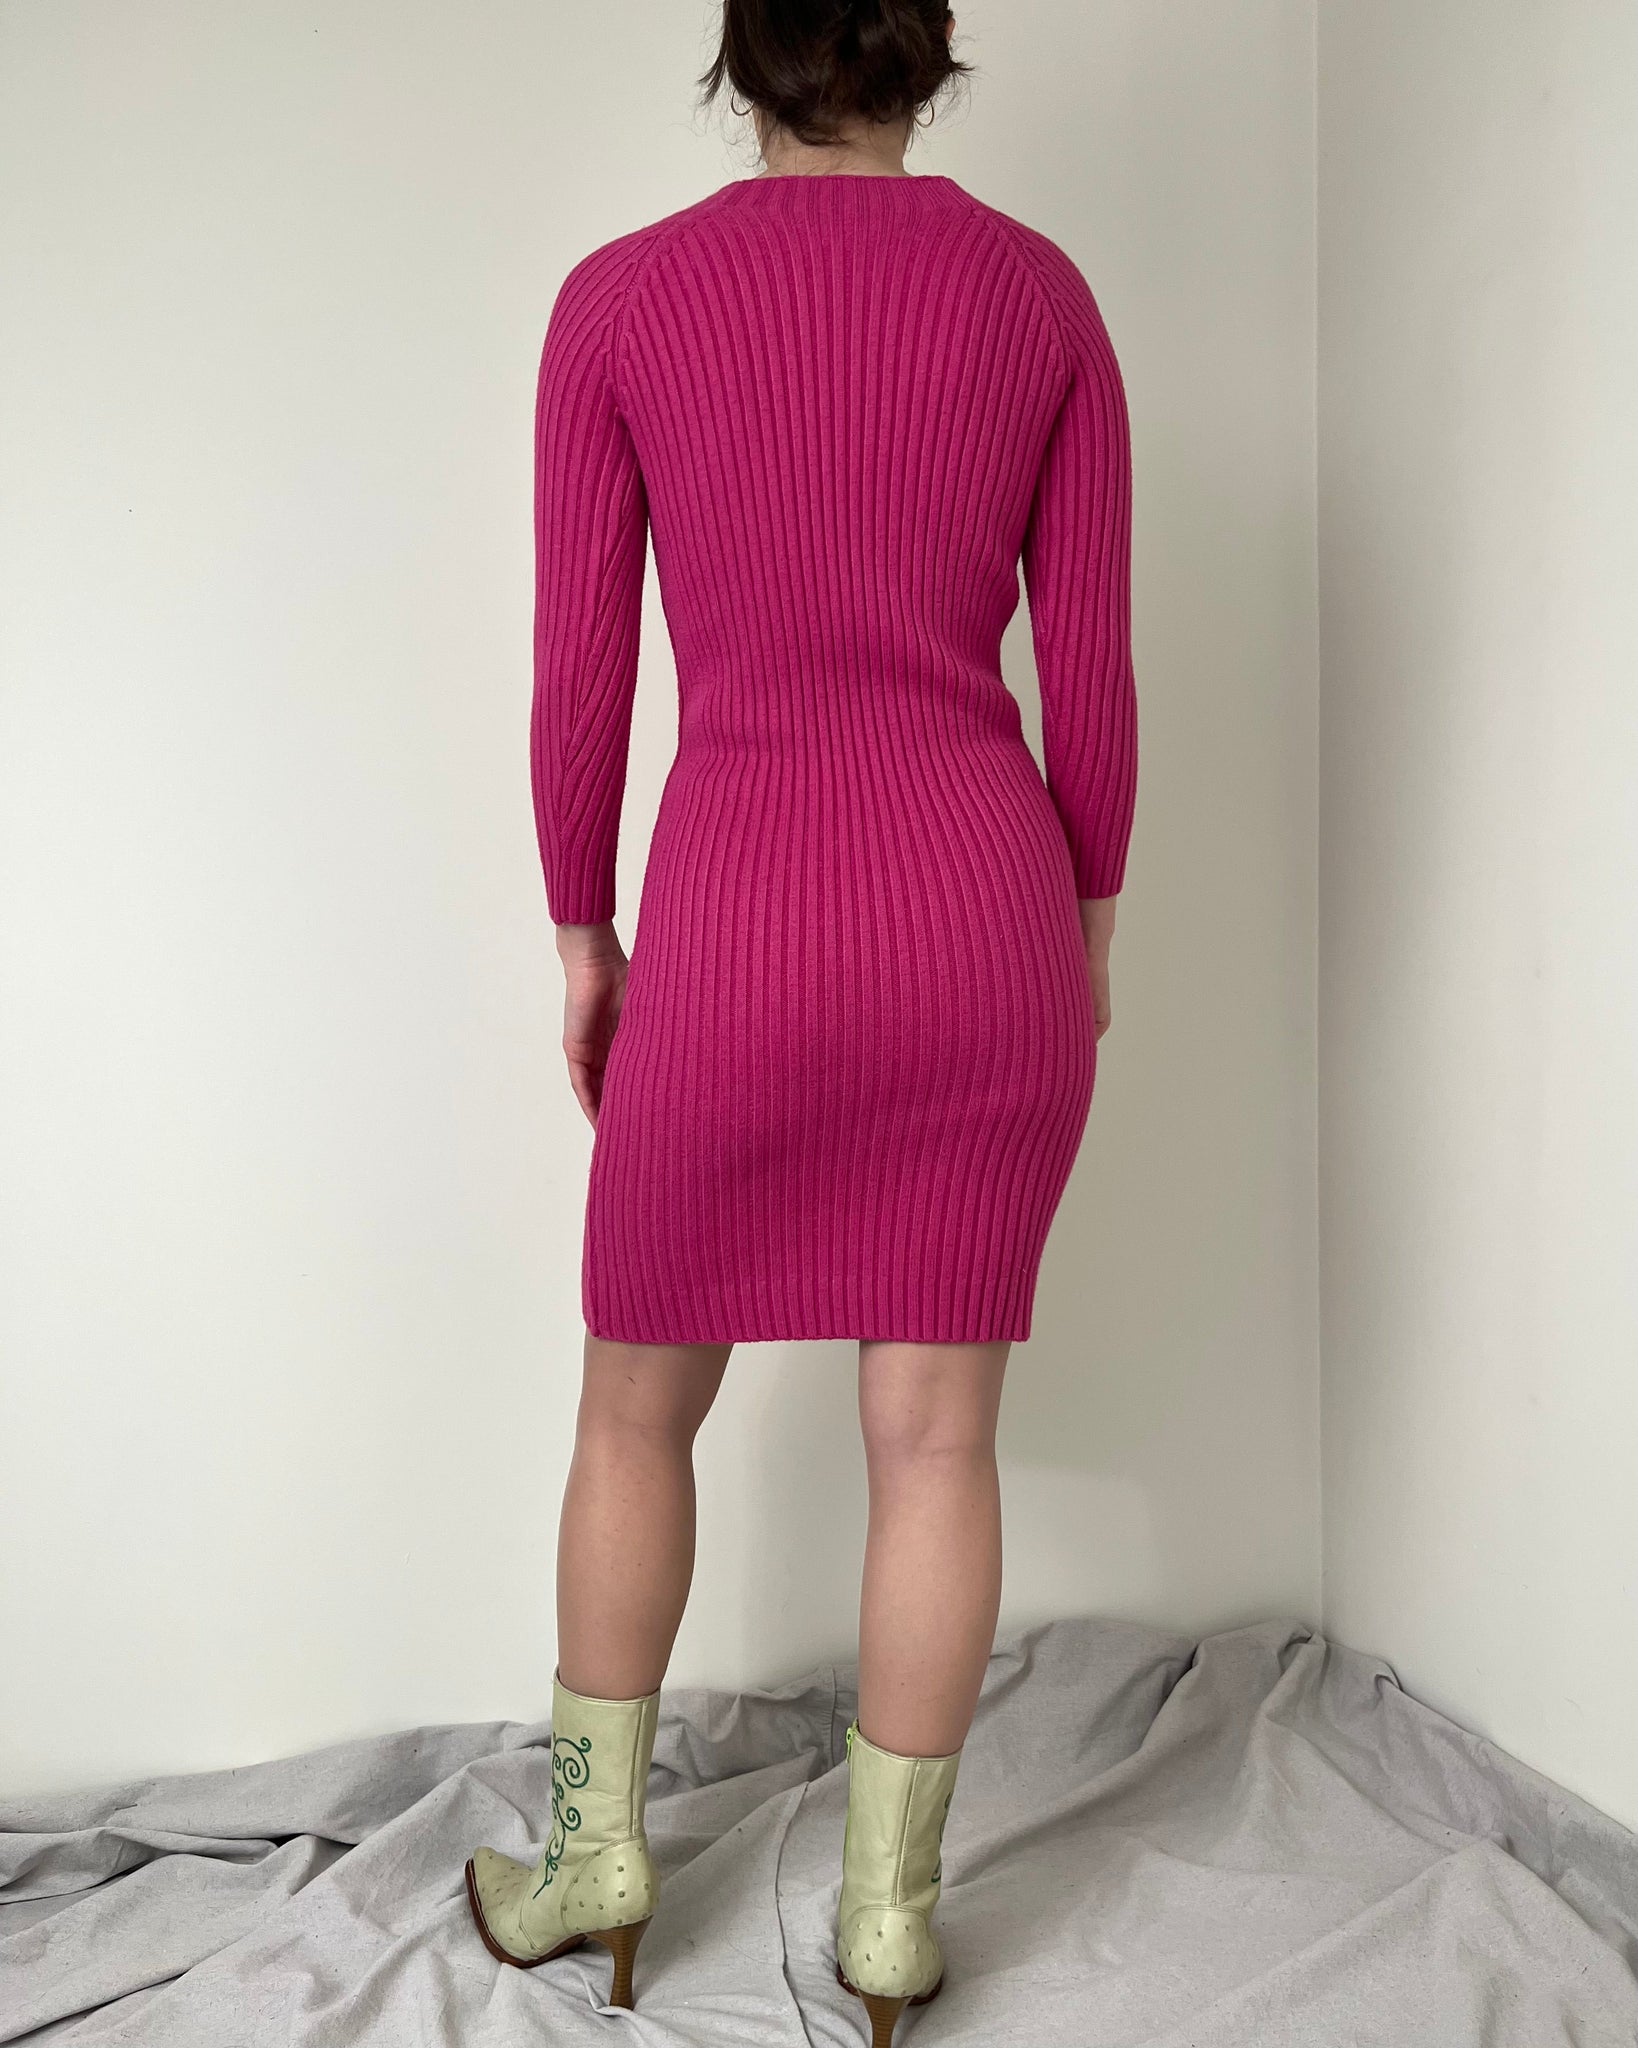 Hot Pink Rib Knit Sweater Dress (Fits XS/S)